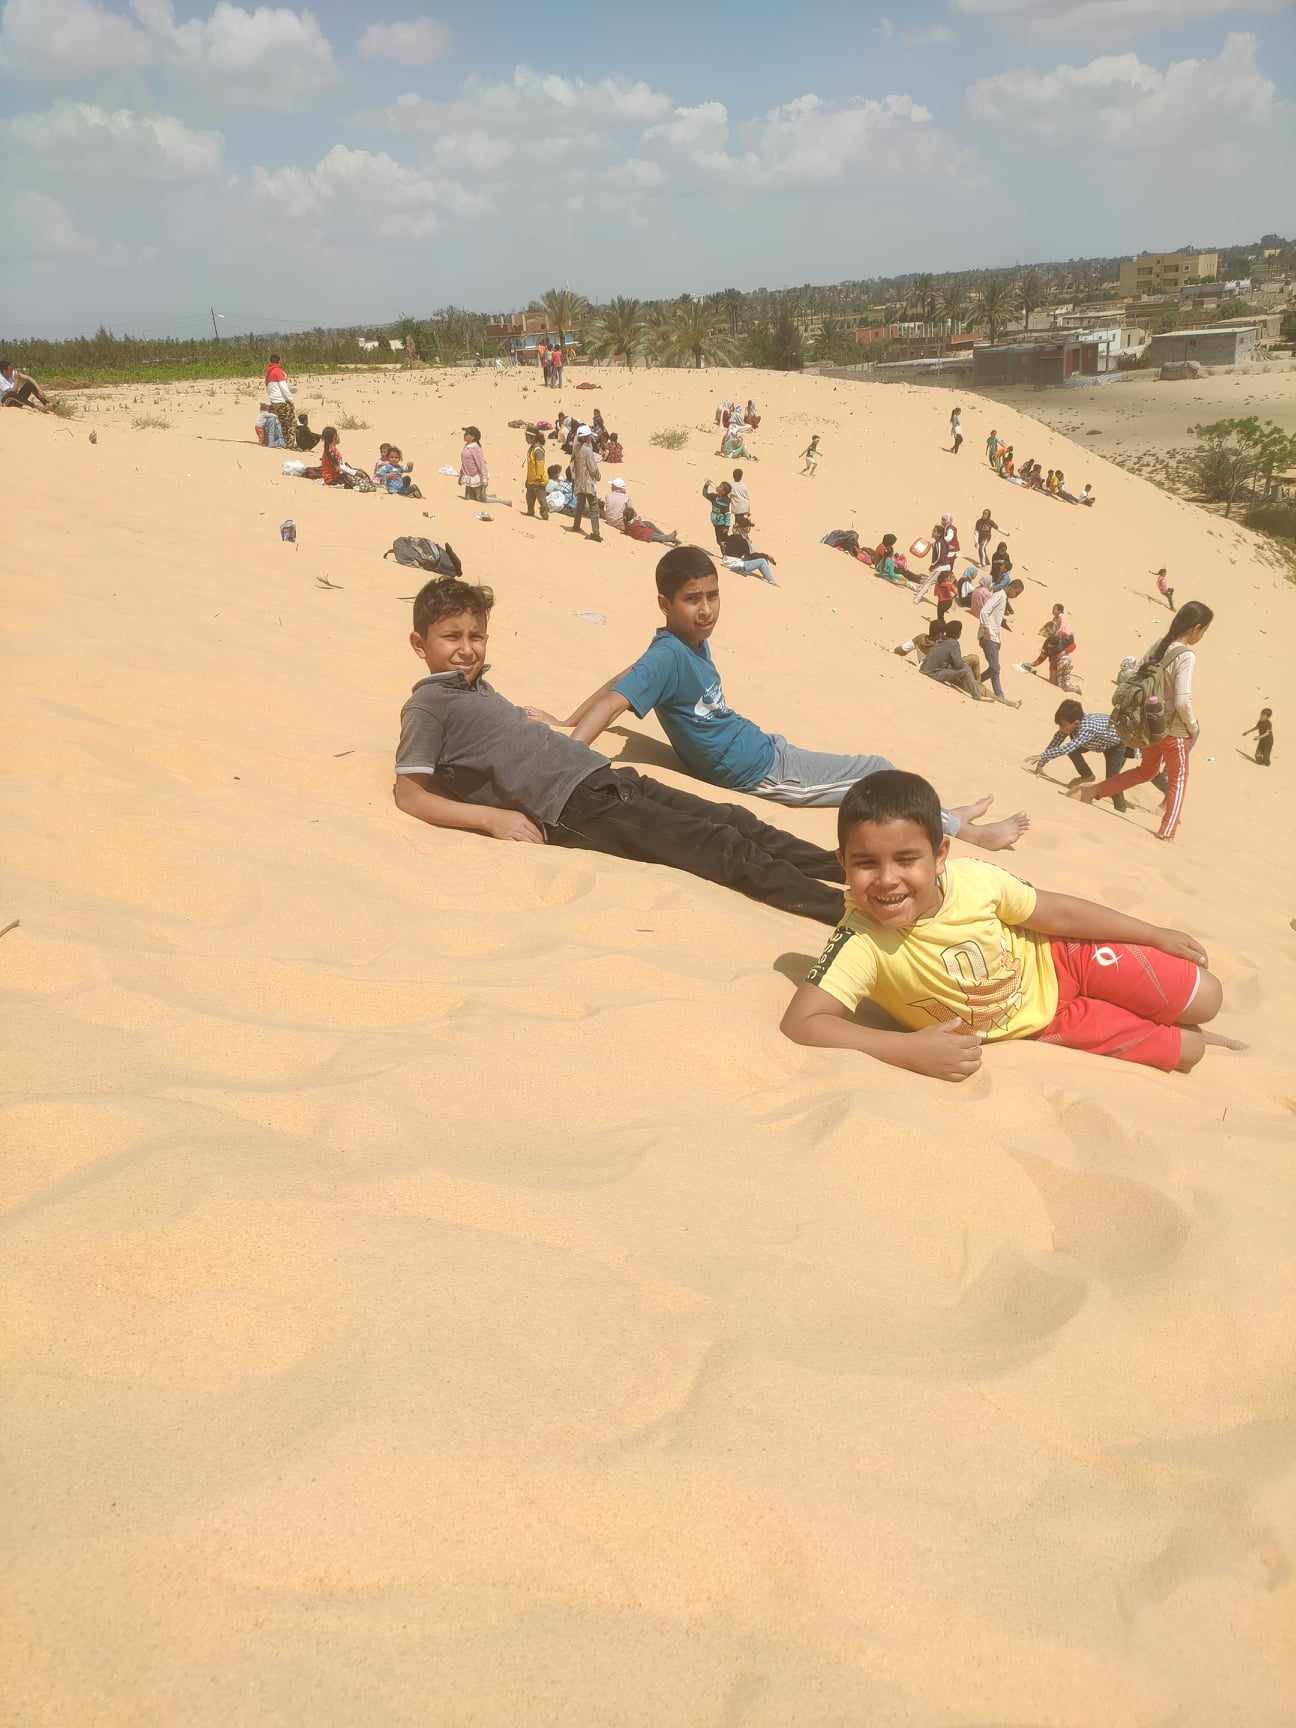 الأطفال يستمتعون بالتزحلق علي الرمال